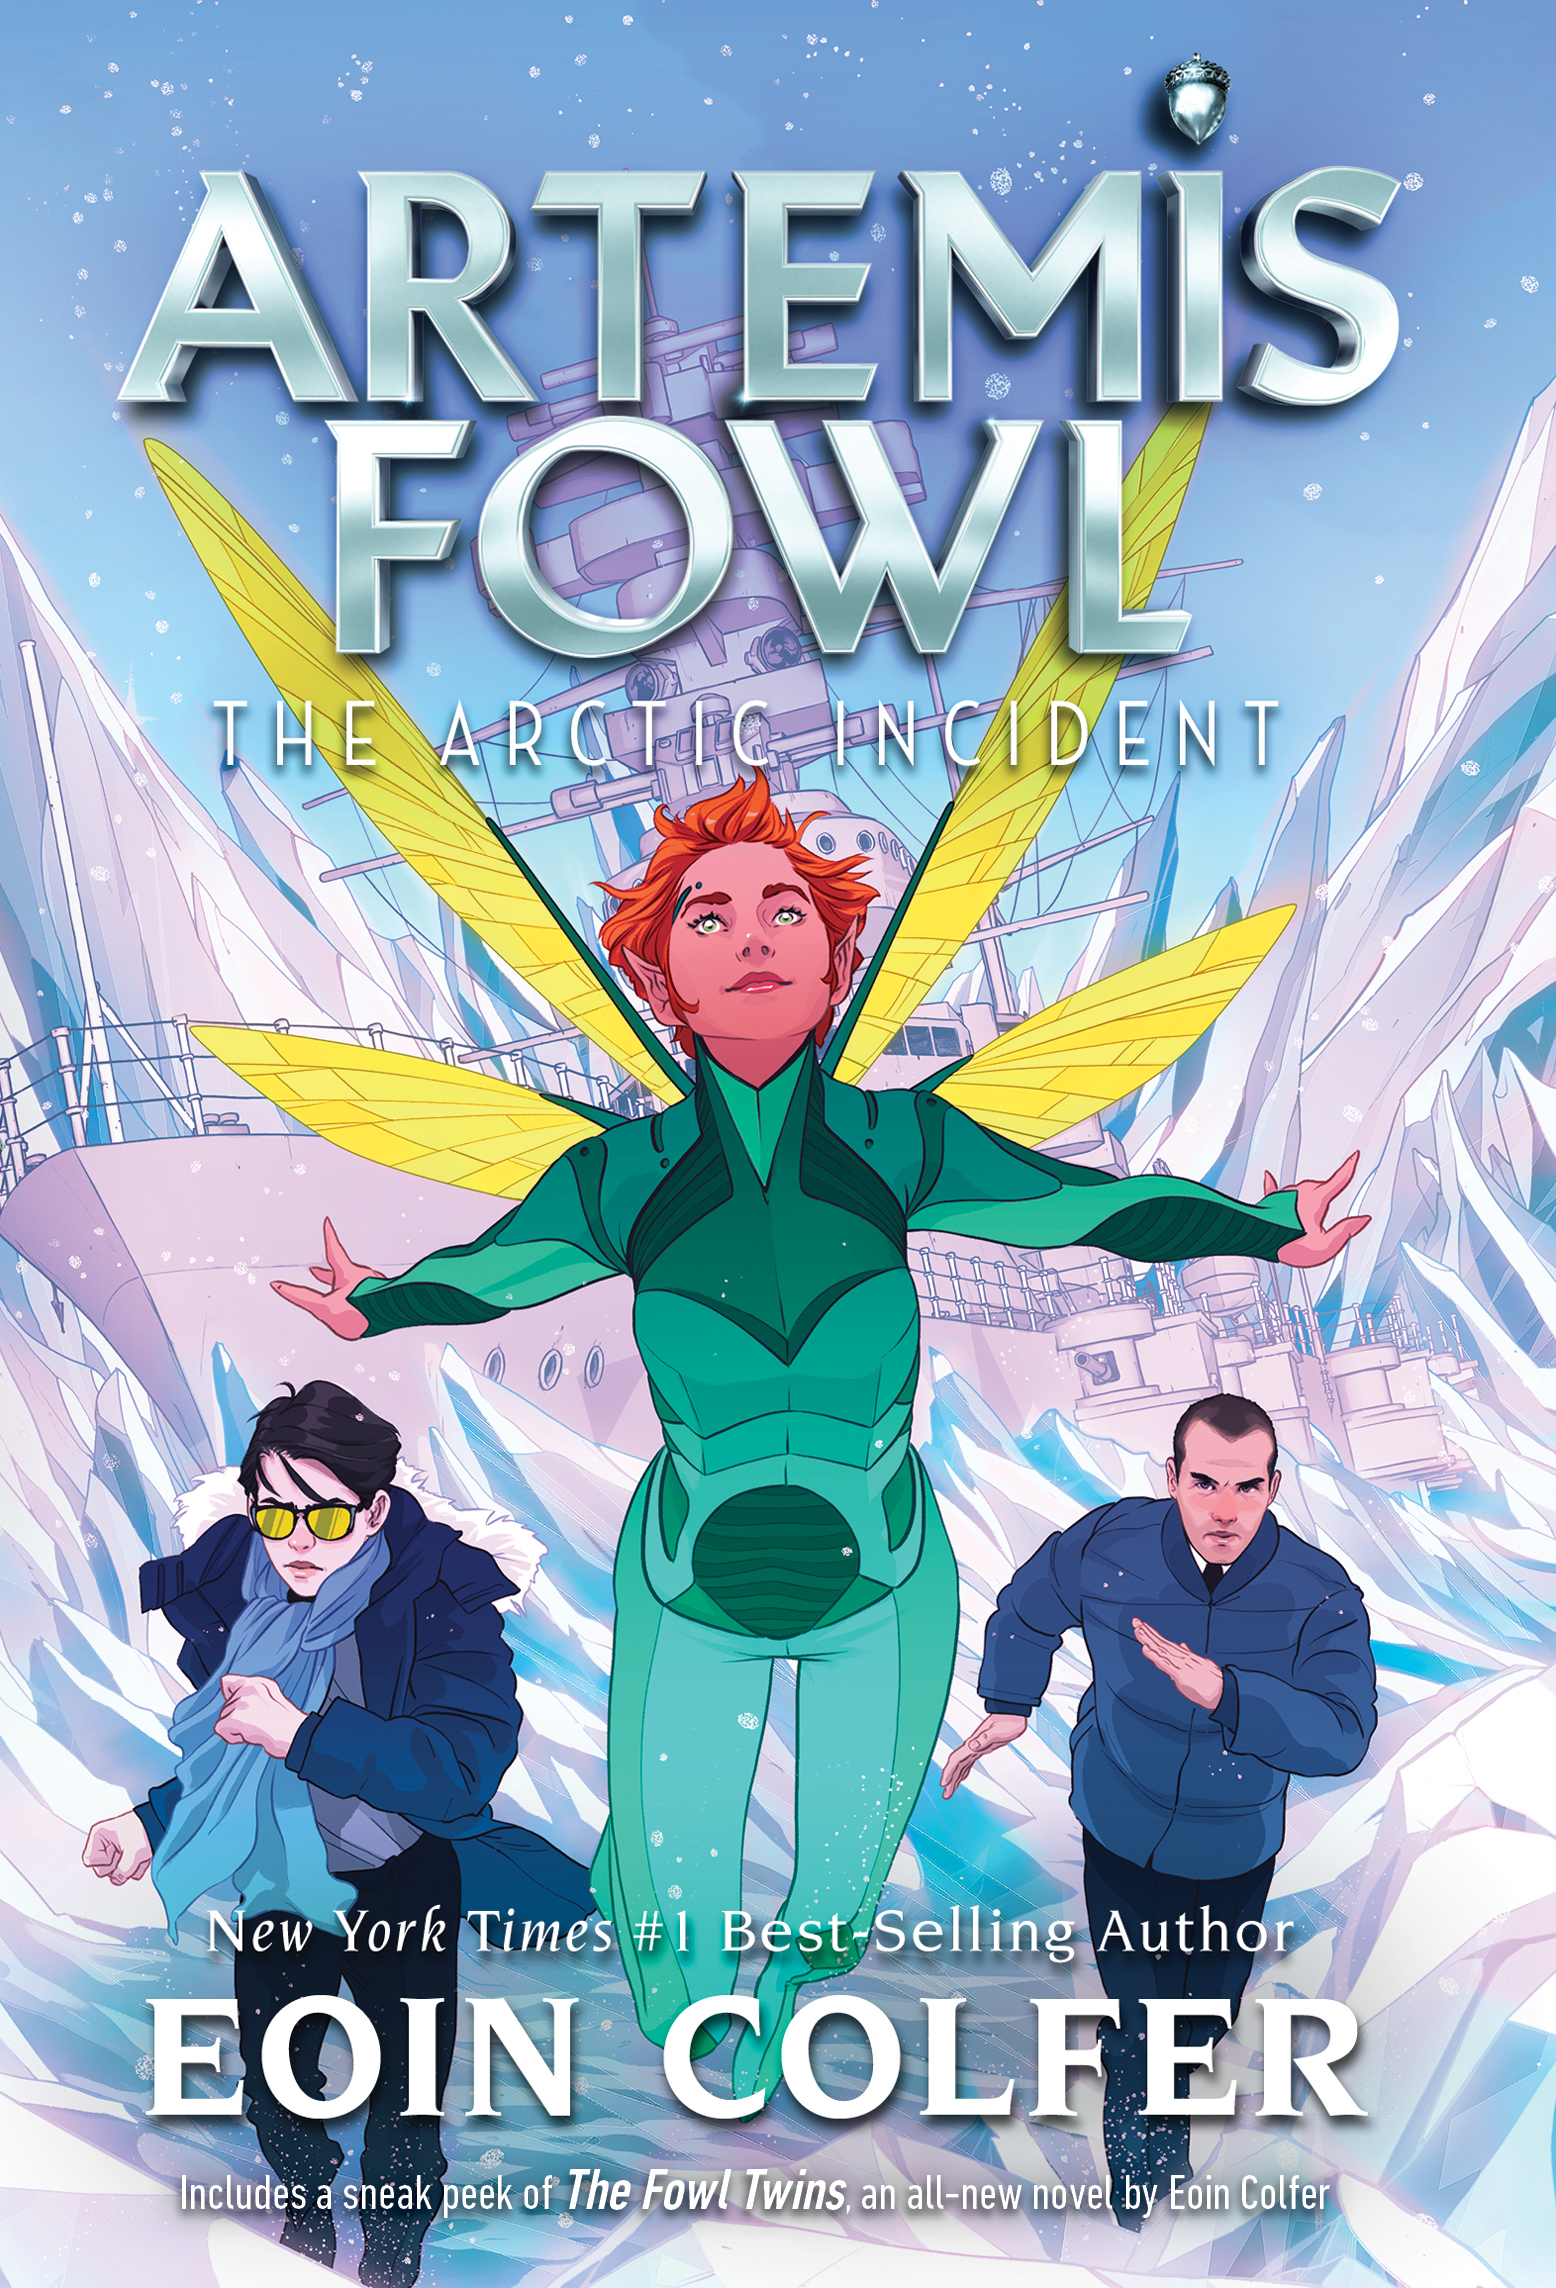 Uma Aventura no Ártico (Artemis Fowl #2) - Eoin Colfer